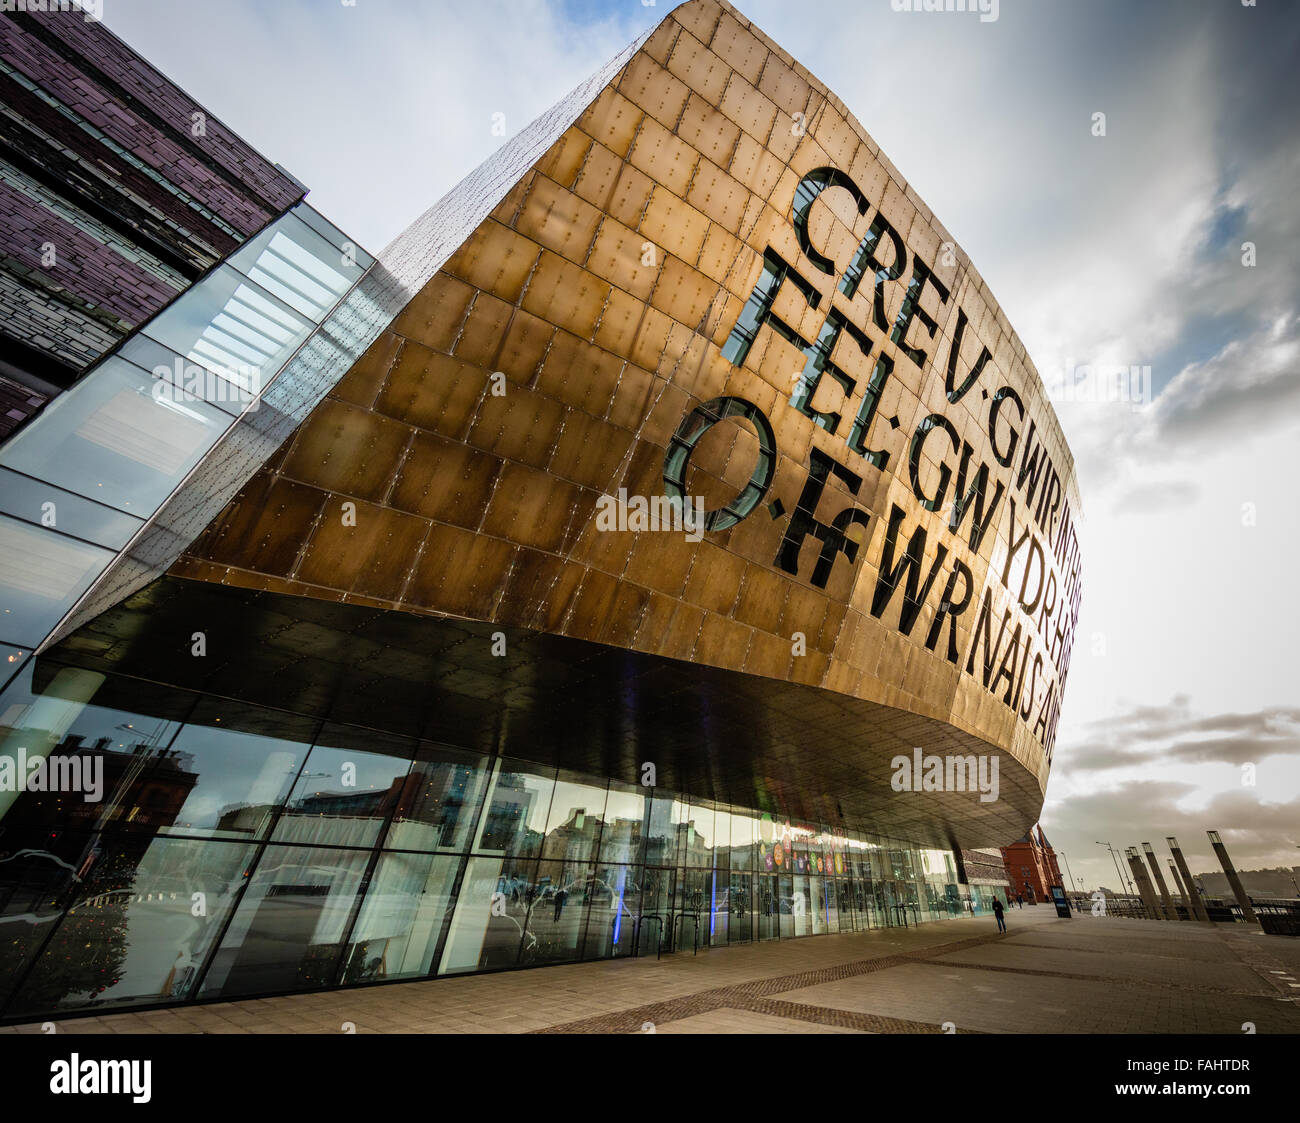 Das Wales Millennium Centre in Cardiff Bay Wales ist ein Theater und Kulturzentrum mit einer markanten Metallfassade Stockfoto